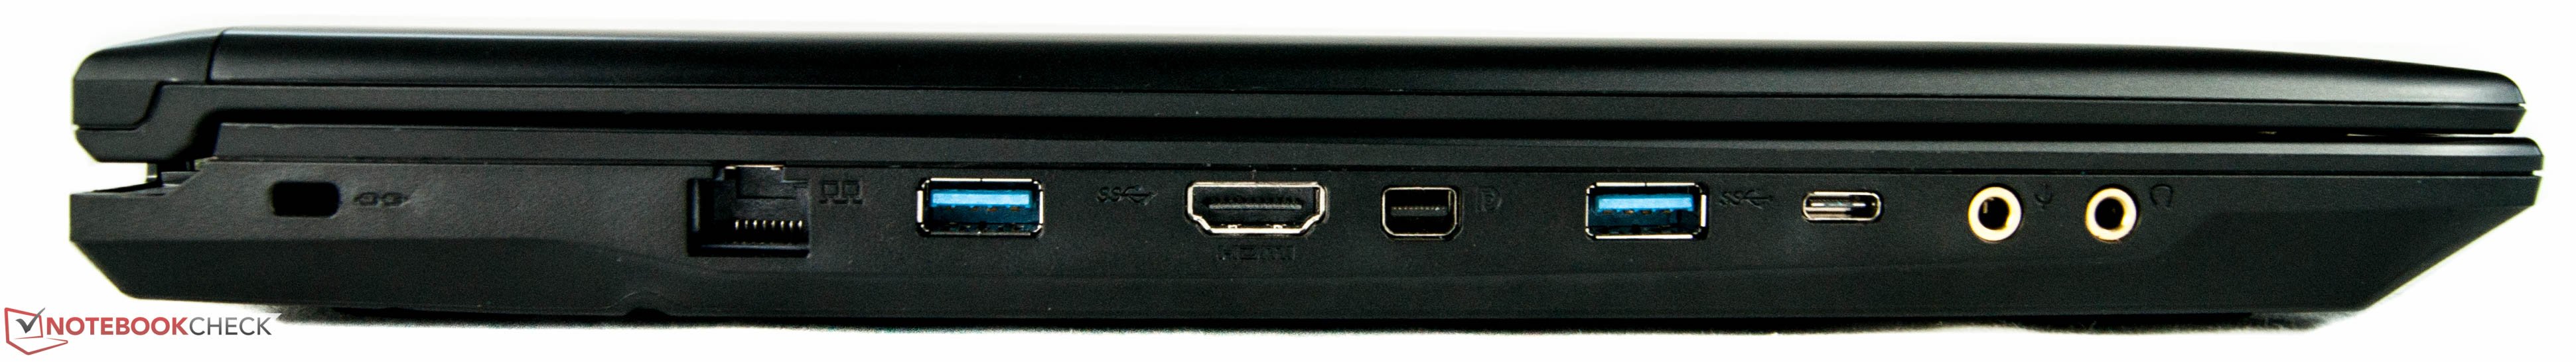 Côté gauche : verrou Kensington, Ethernet, USB 3.0, HDMI, Mini Display Port, USB 3.0, USB type C, entrée micro, sortie écouteurs.